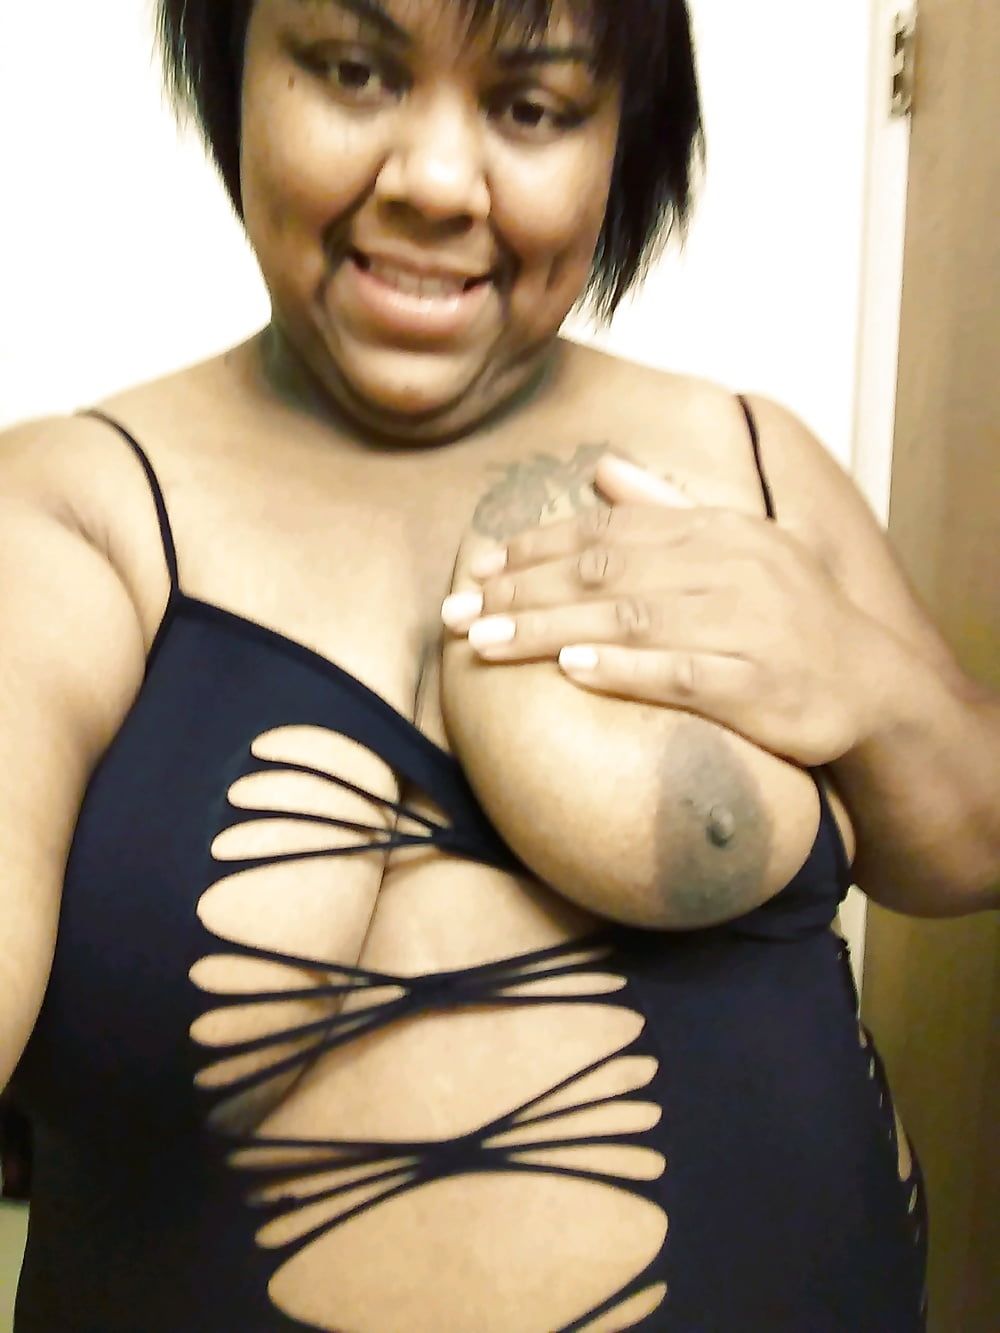 I'm Big Titty Tiara Danielle Cox Detroit MI #18